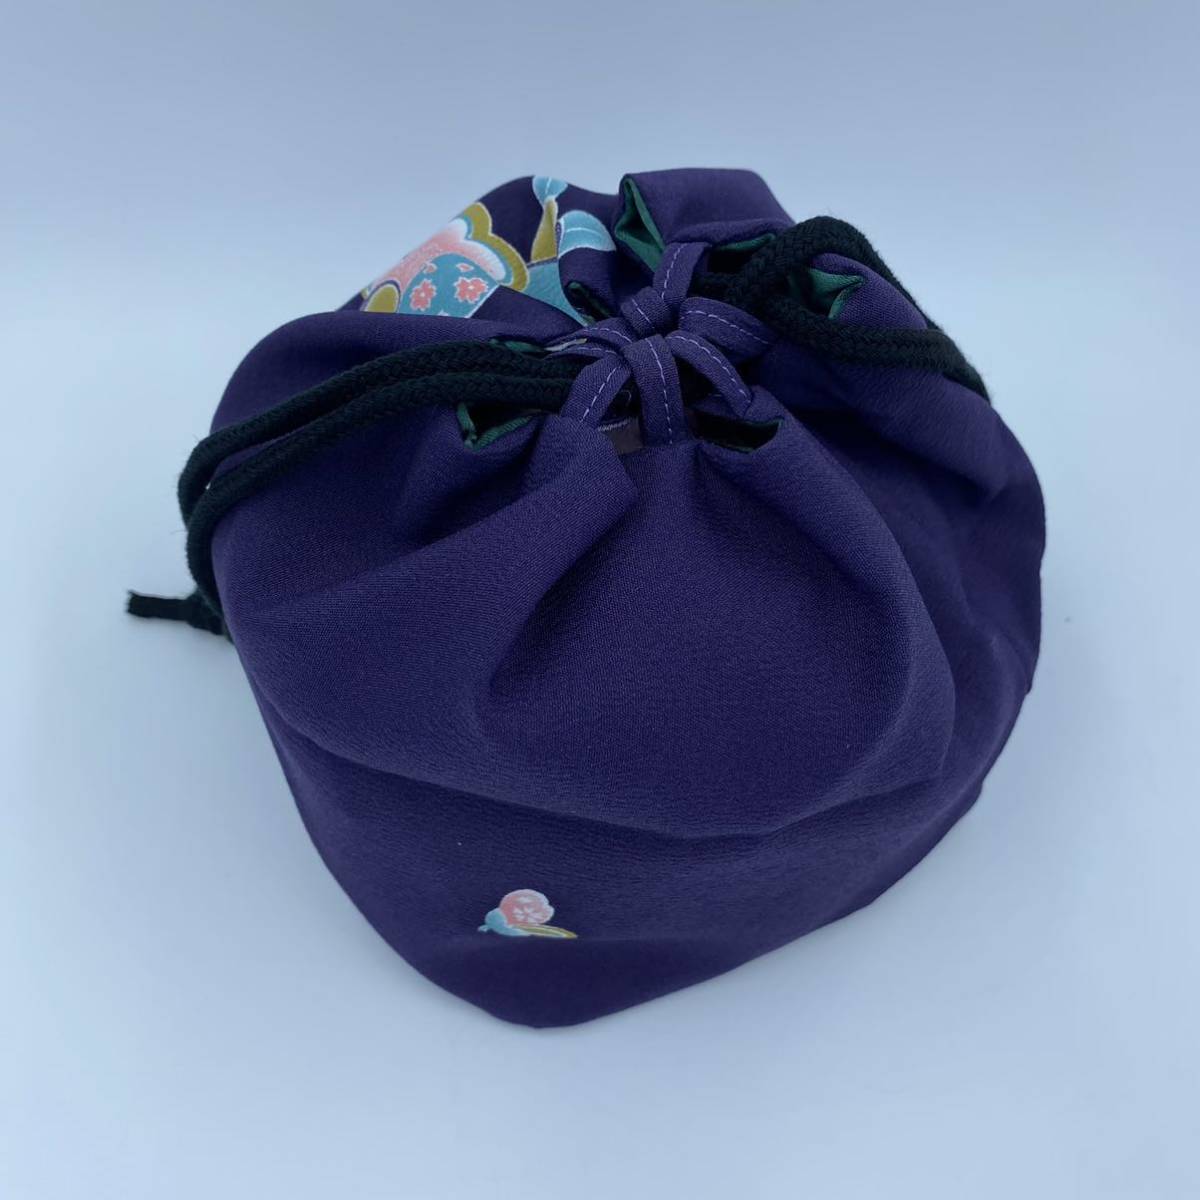 巾着袋小物入れ和装用バッグかばん着物浴衣和装和柄和服かばん紫パープル日本代购,买对网